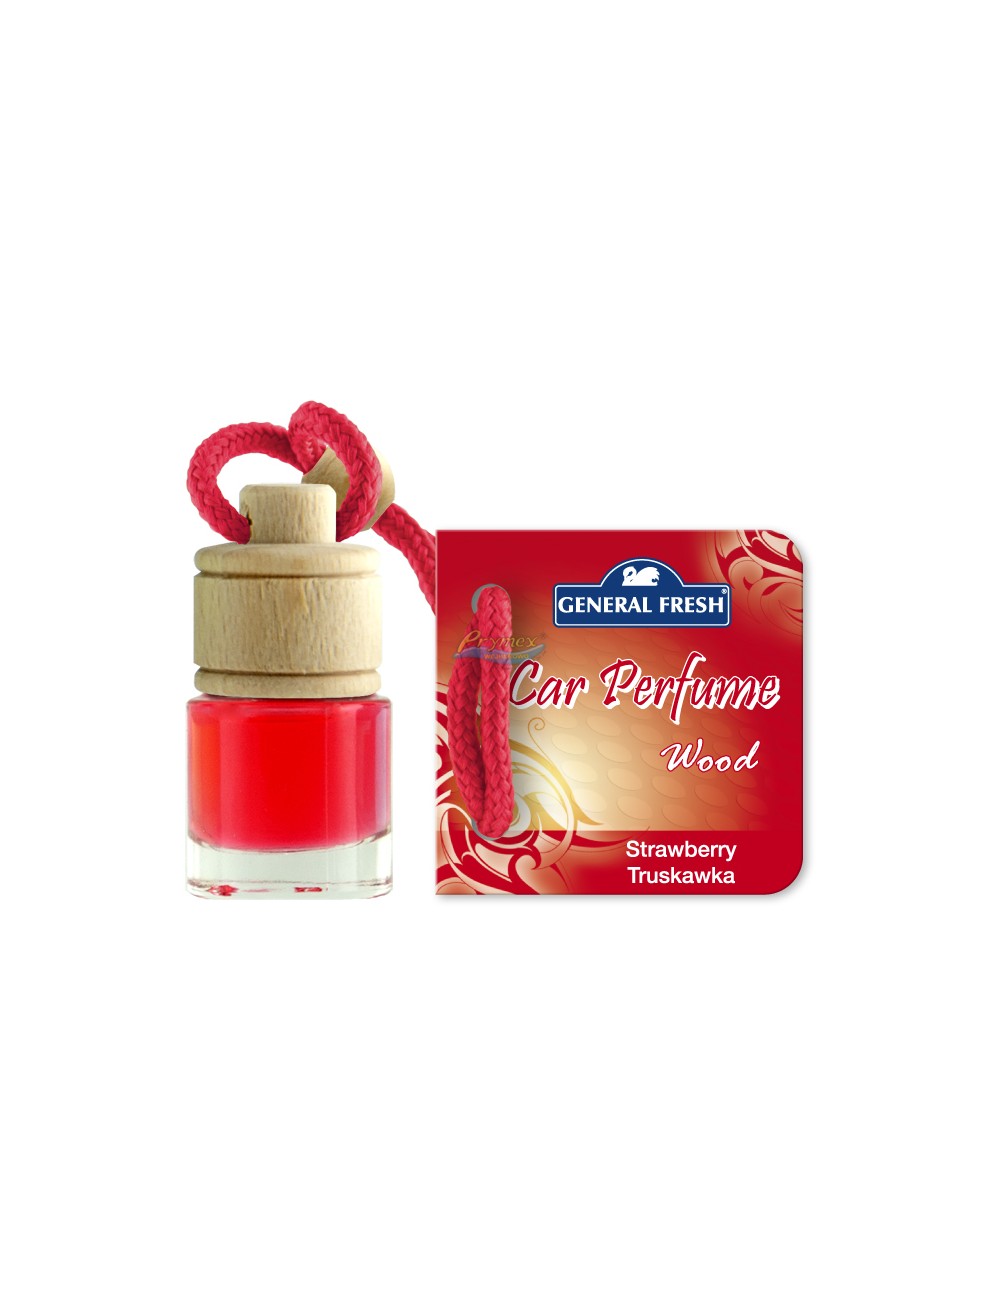 General Fresh Car Perfume Wood Strawberry Samochodowy Odświeżacz Powietrza o Truskawkowym Zapachu 5 ml